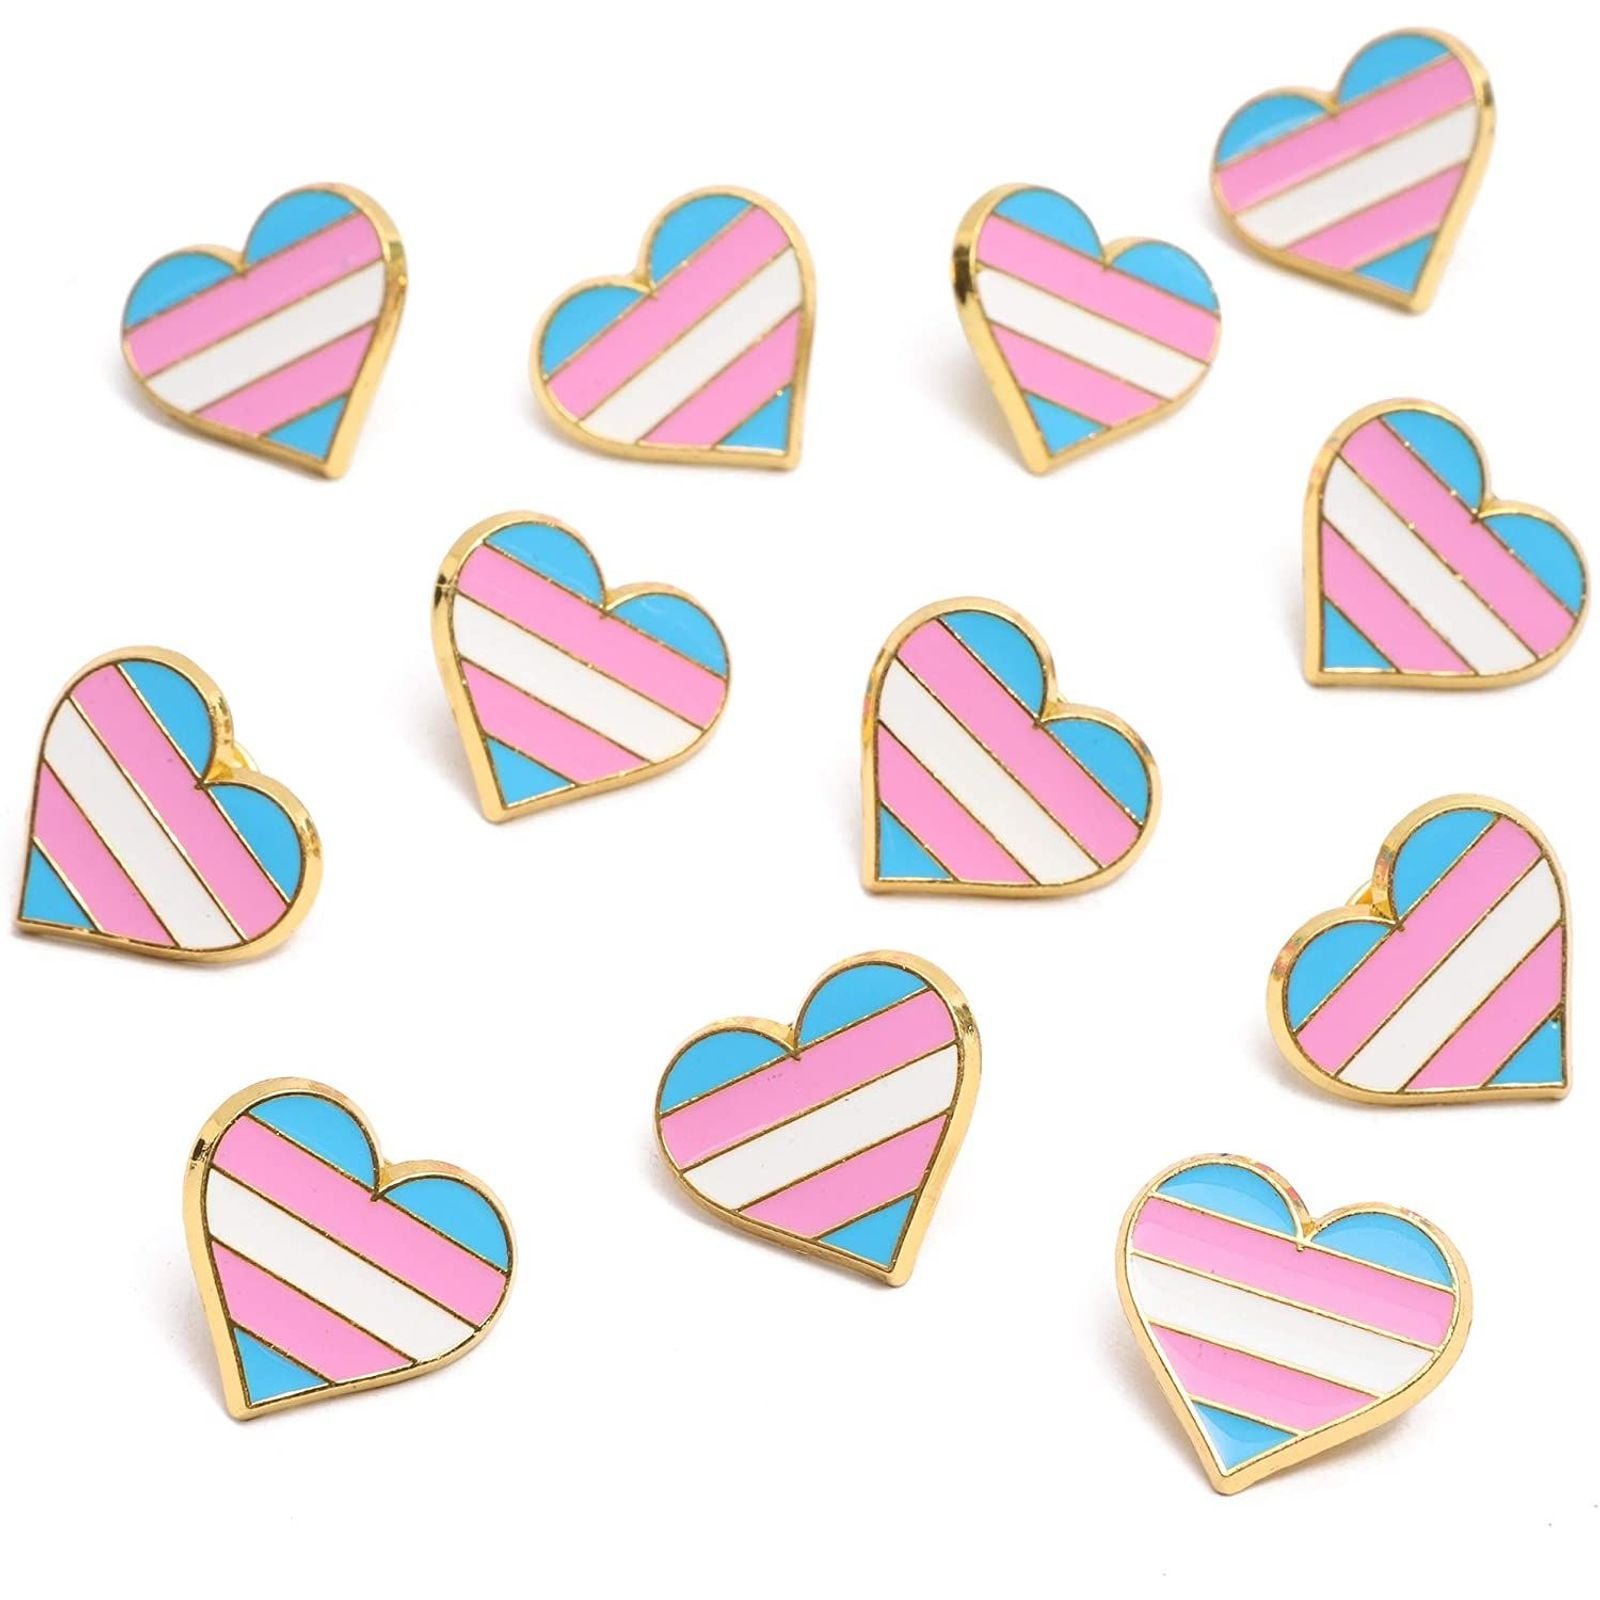 12 Trans & Proud 1" boutons un pouce PINS PINBACKS badge Pride Transgender 